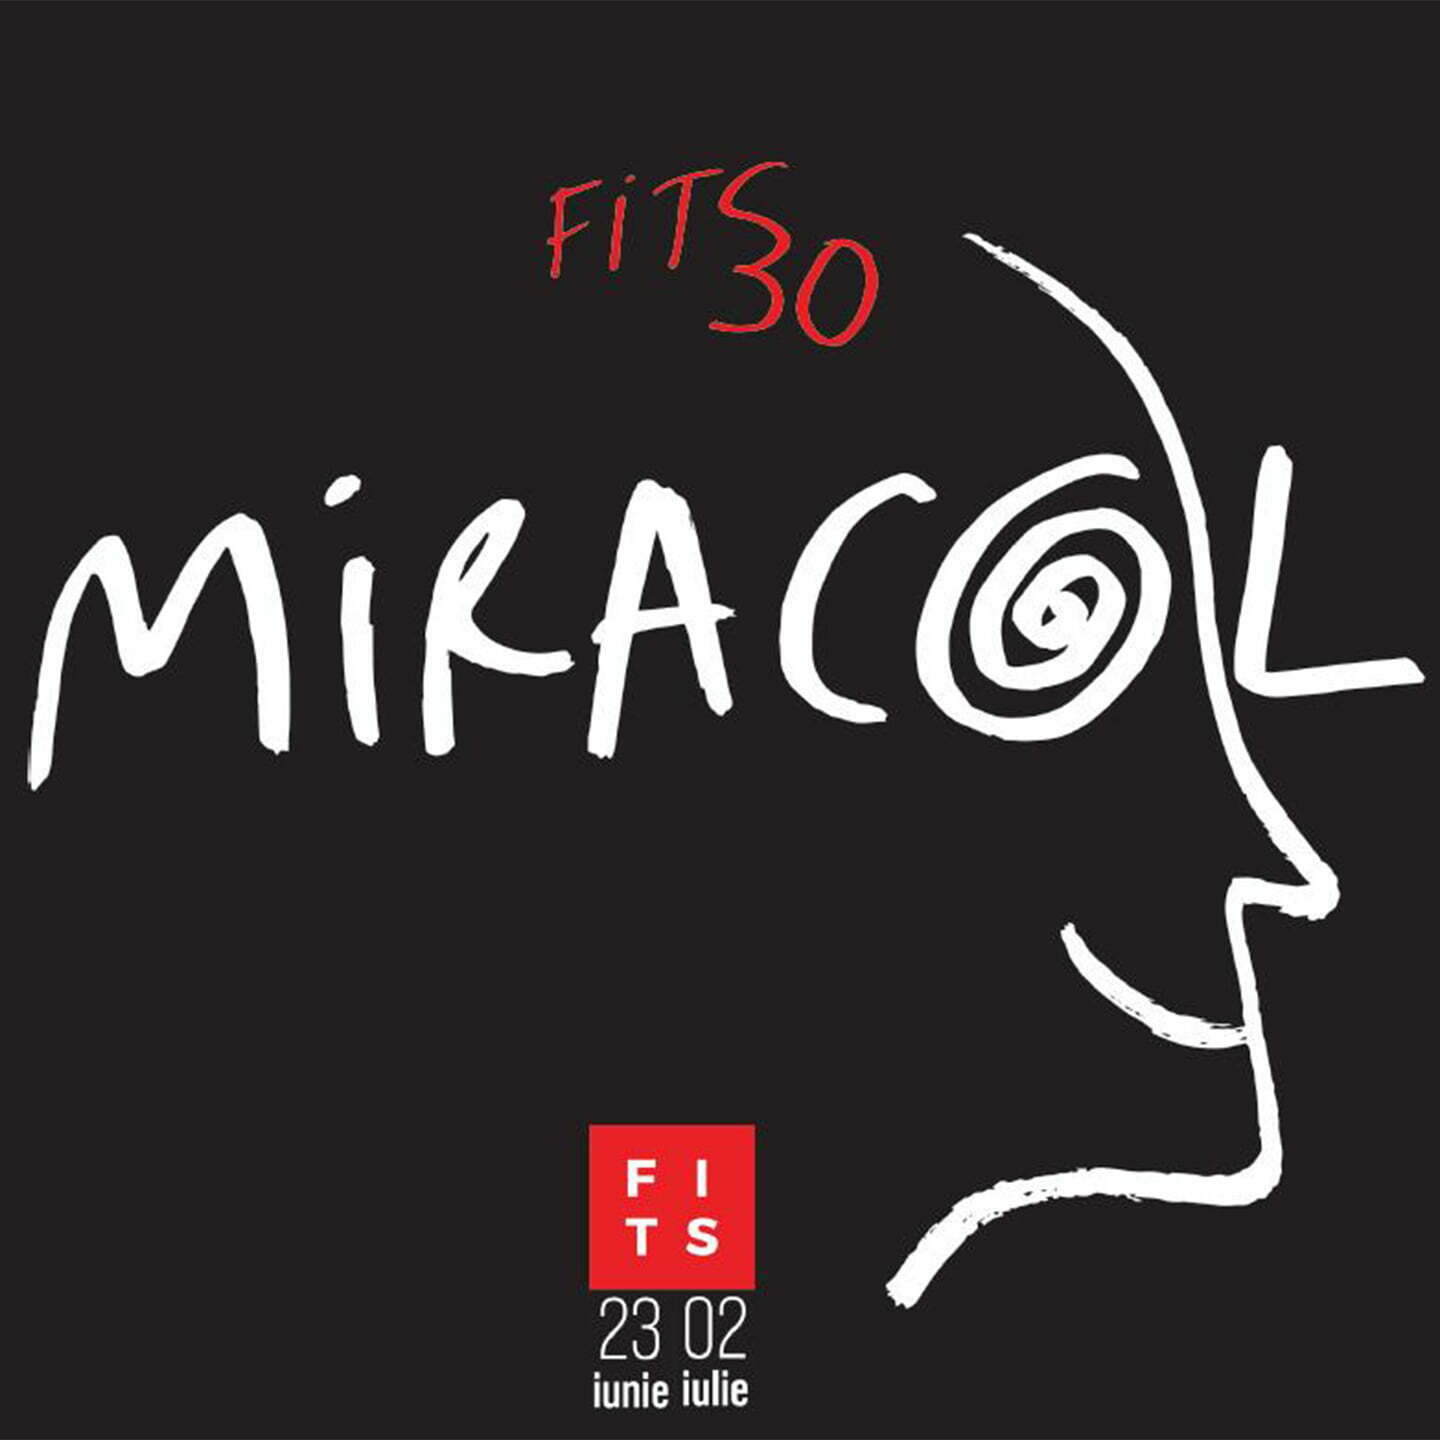 Festivalul-Internațional-de-Teatru de la Sibiu -miracol_fits30